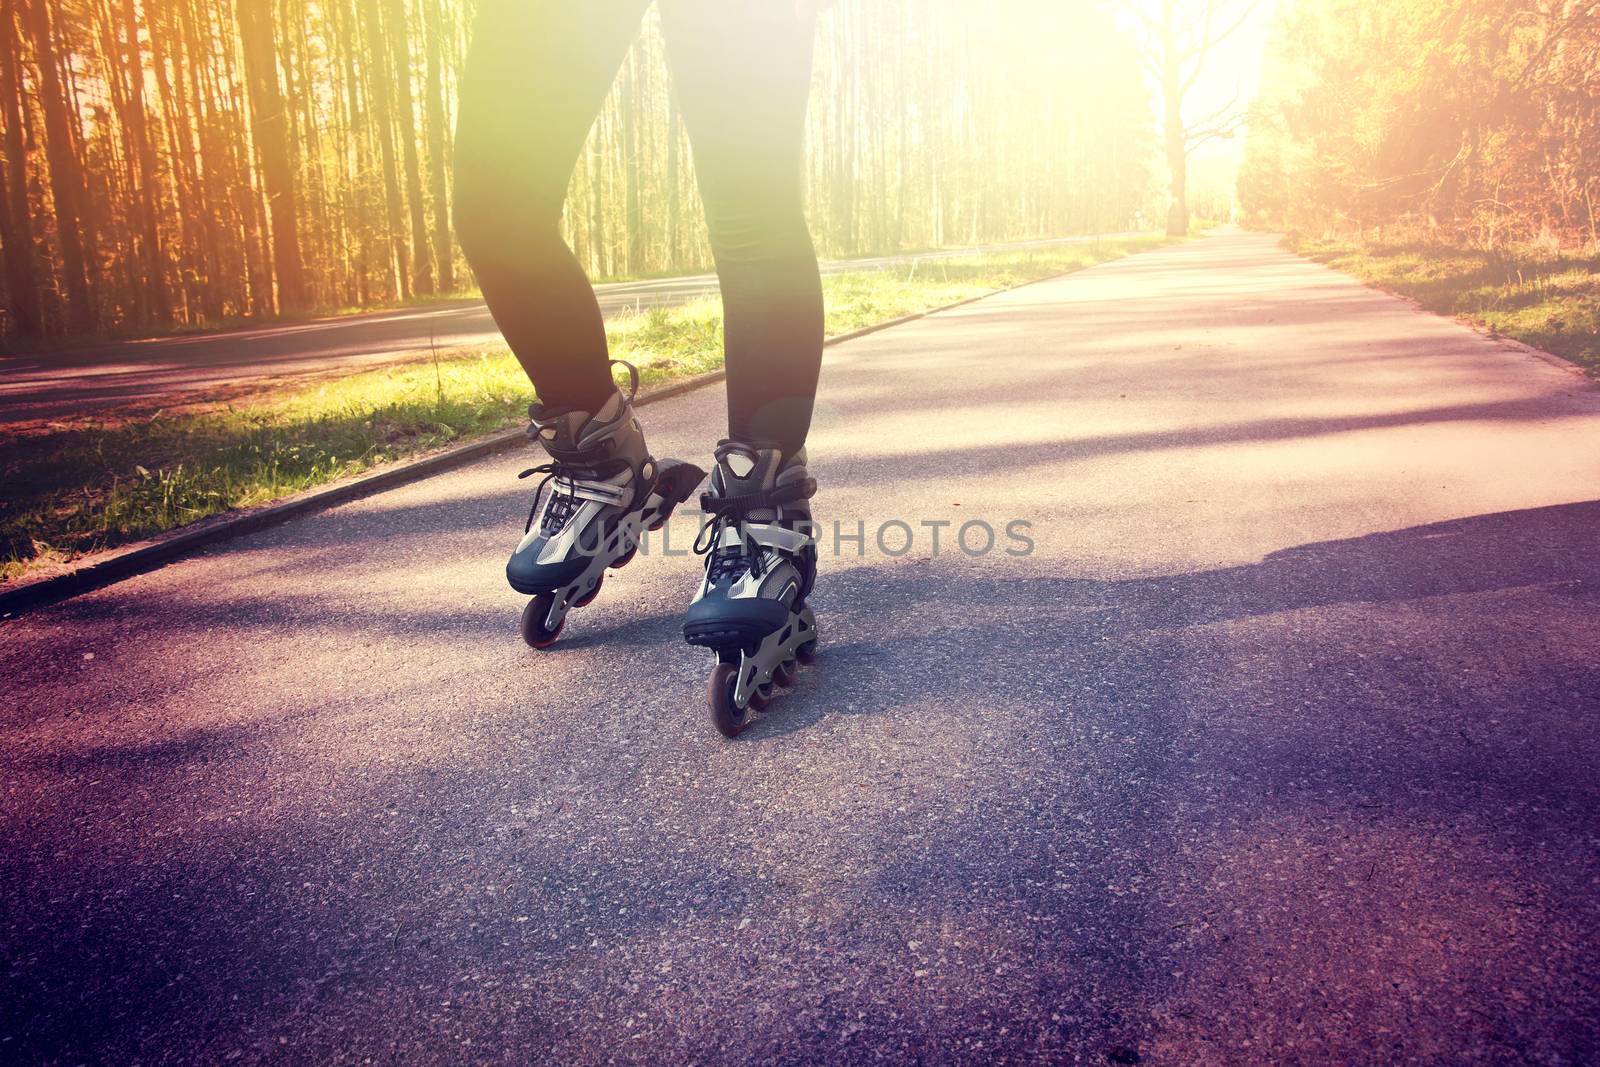 Teenage girl on roller skates at summer. Inline skates sport conceptual image.